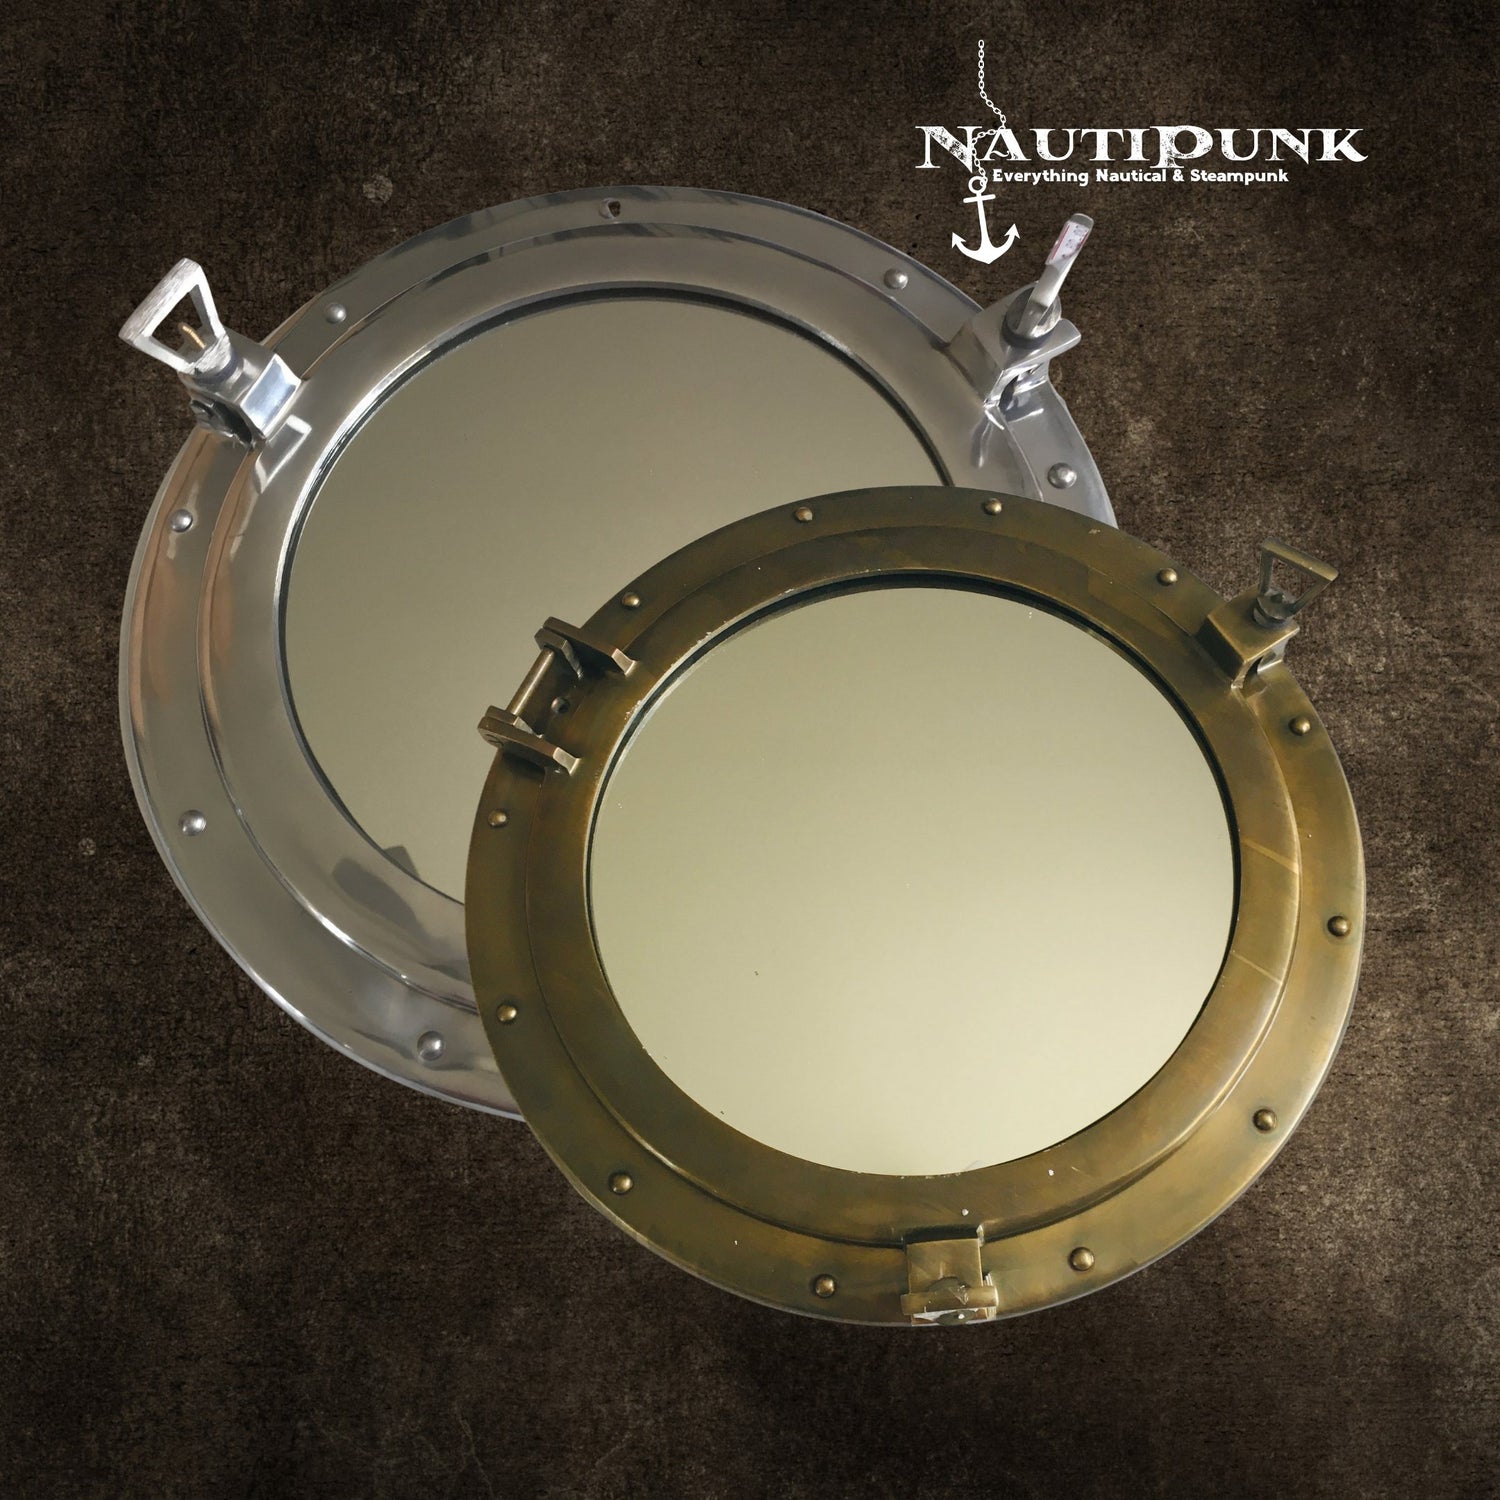 Nautical Porthole Mirrors